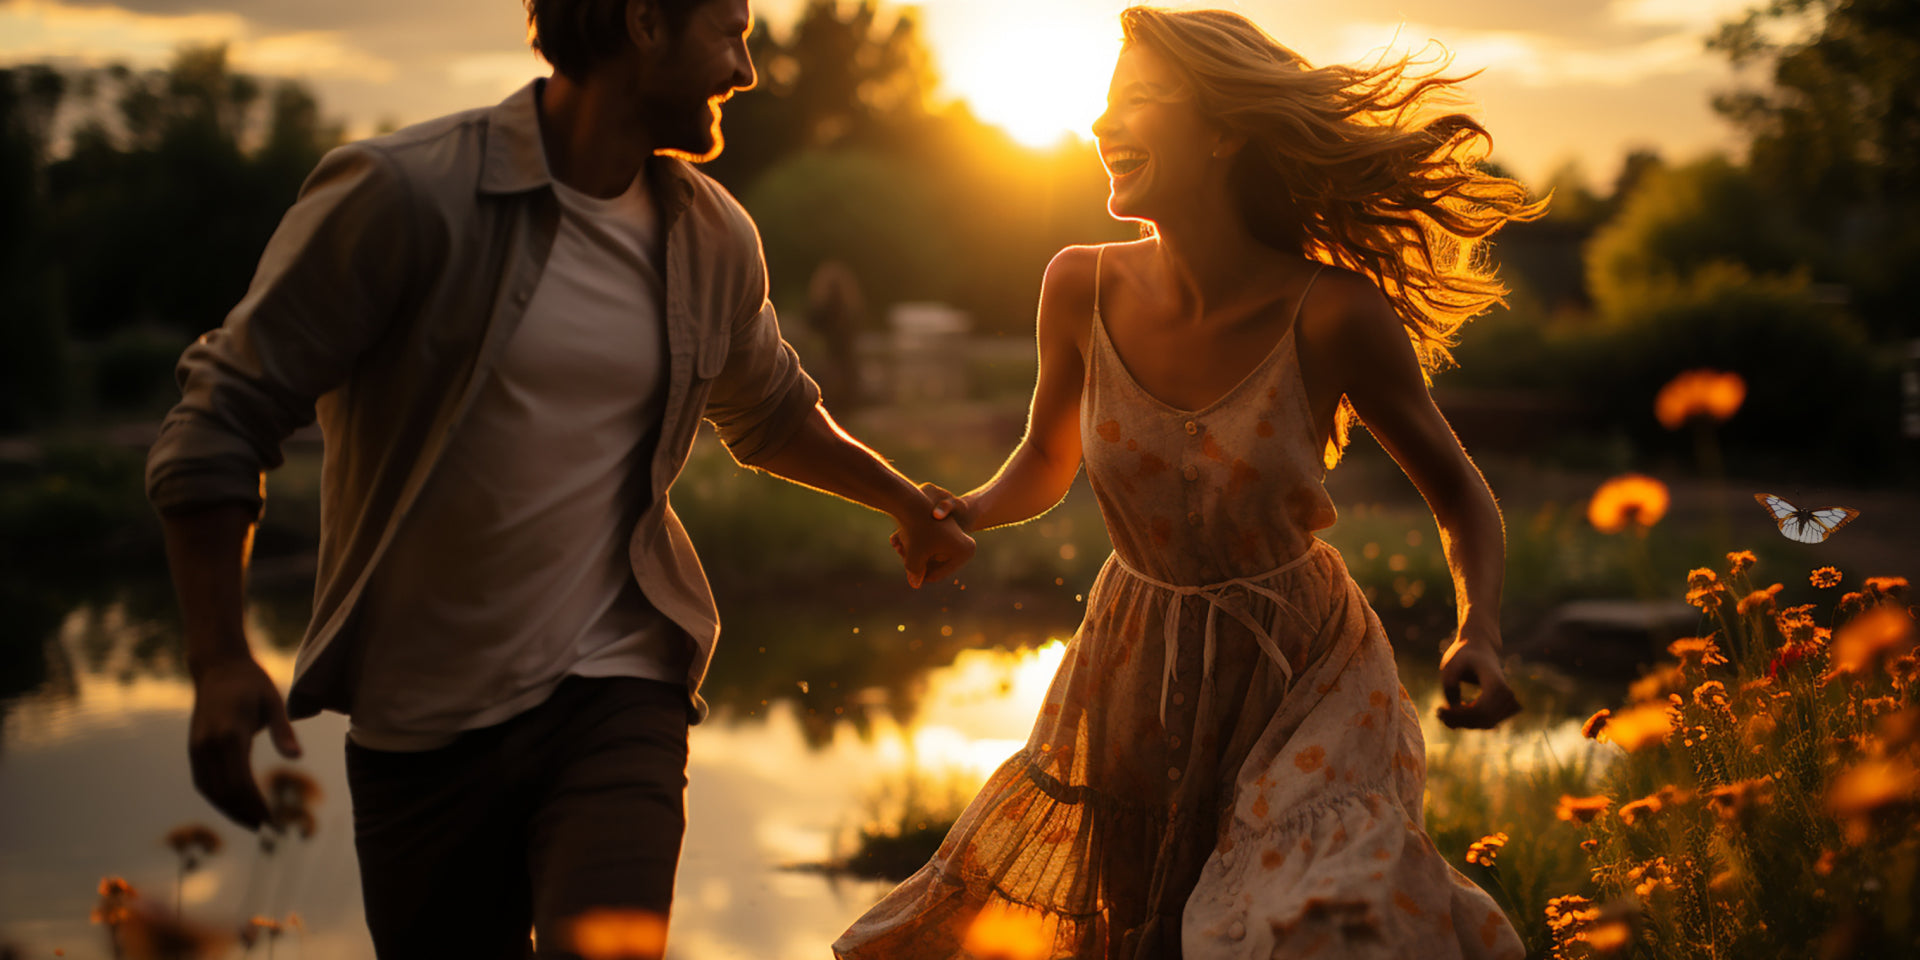 Ein glückliches Paar, das in einer wunderschönen Umgebung im Freien läuft, Händchen haltend, ohne sich Sorgen zu machen. 